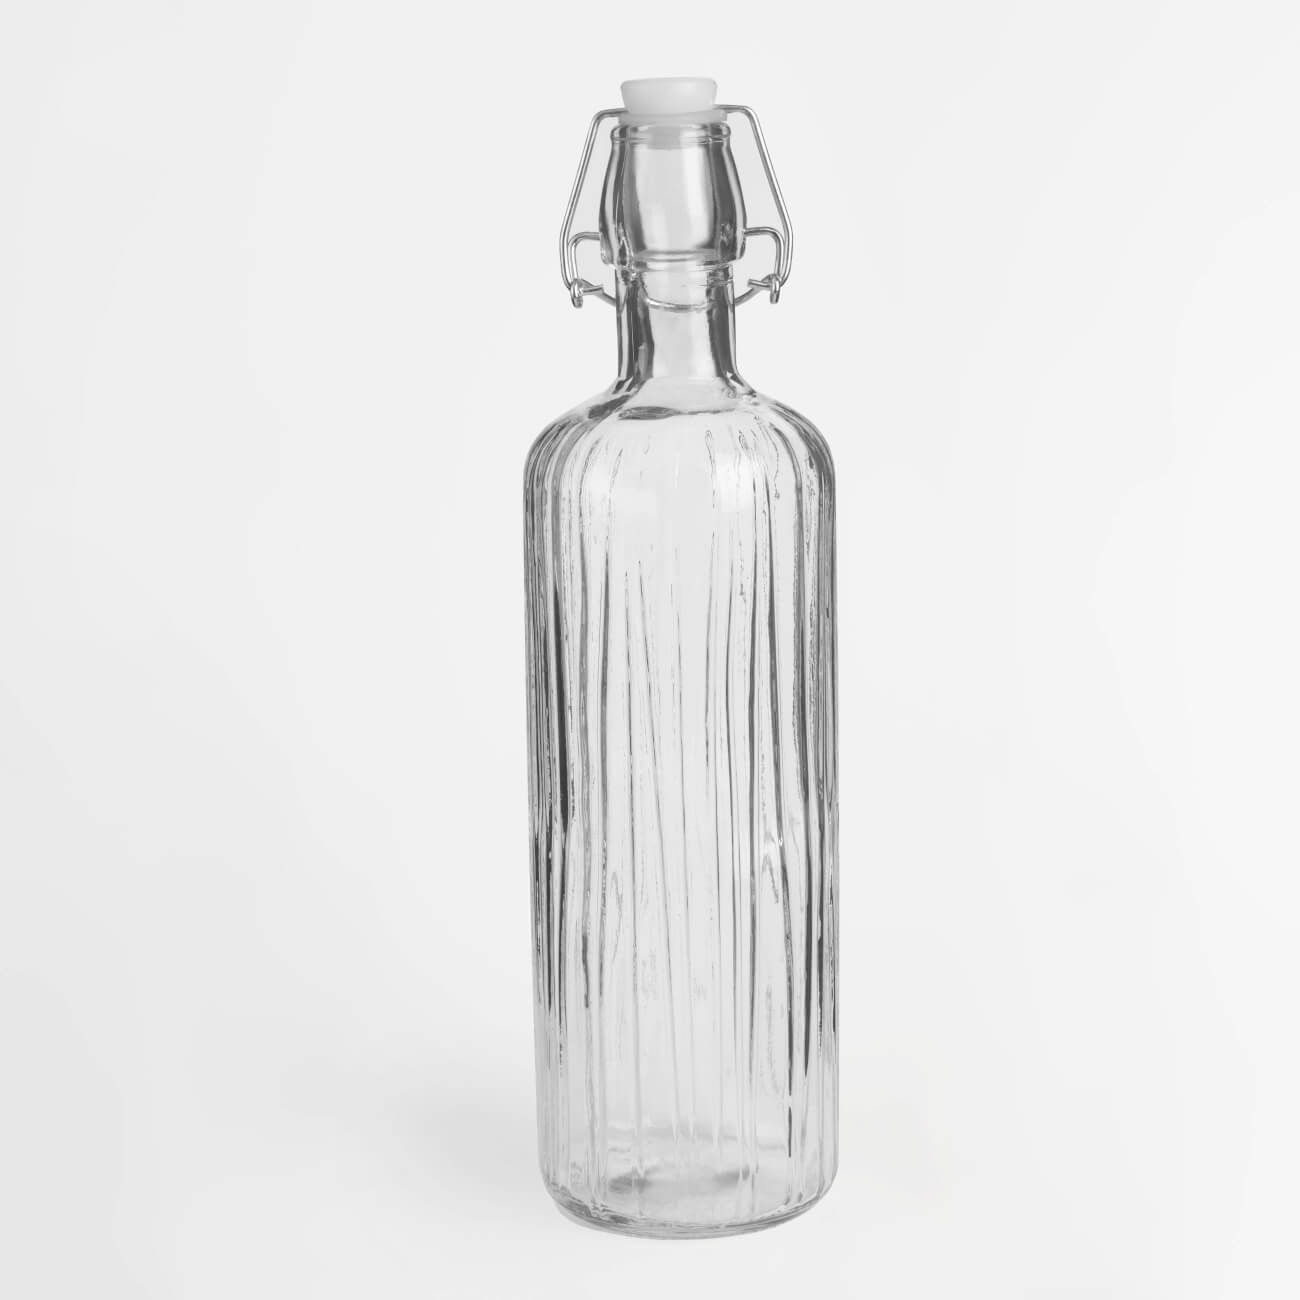 Бутылка для масла или уксуса, 700 мл, с клипсой, стекло Р/металл, Ribby бутылка для масла или уксуса 700 мл с клипсой стекло р металл ribby